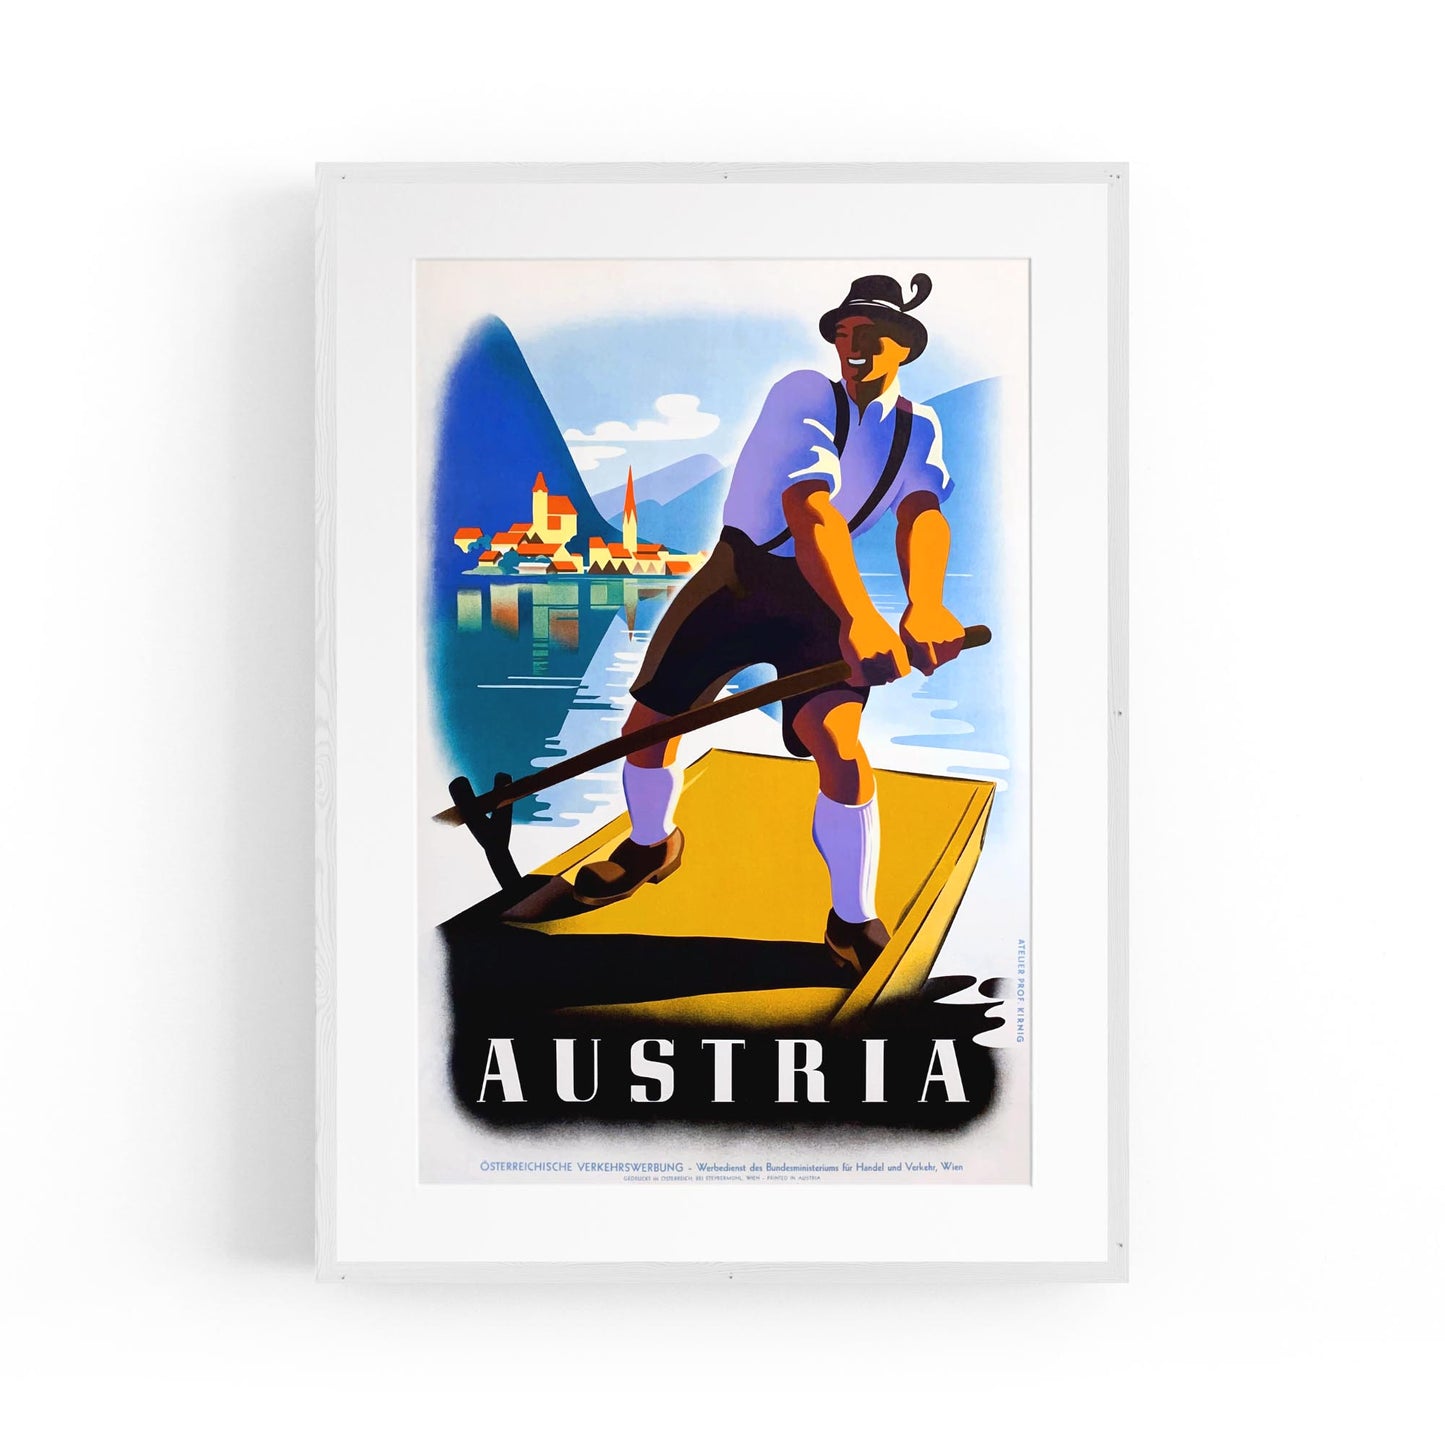 Austria by Paul Kirnig | Framed Vintage Travel Poster